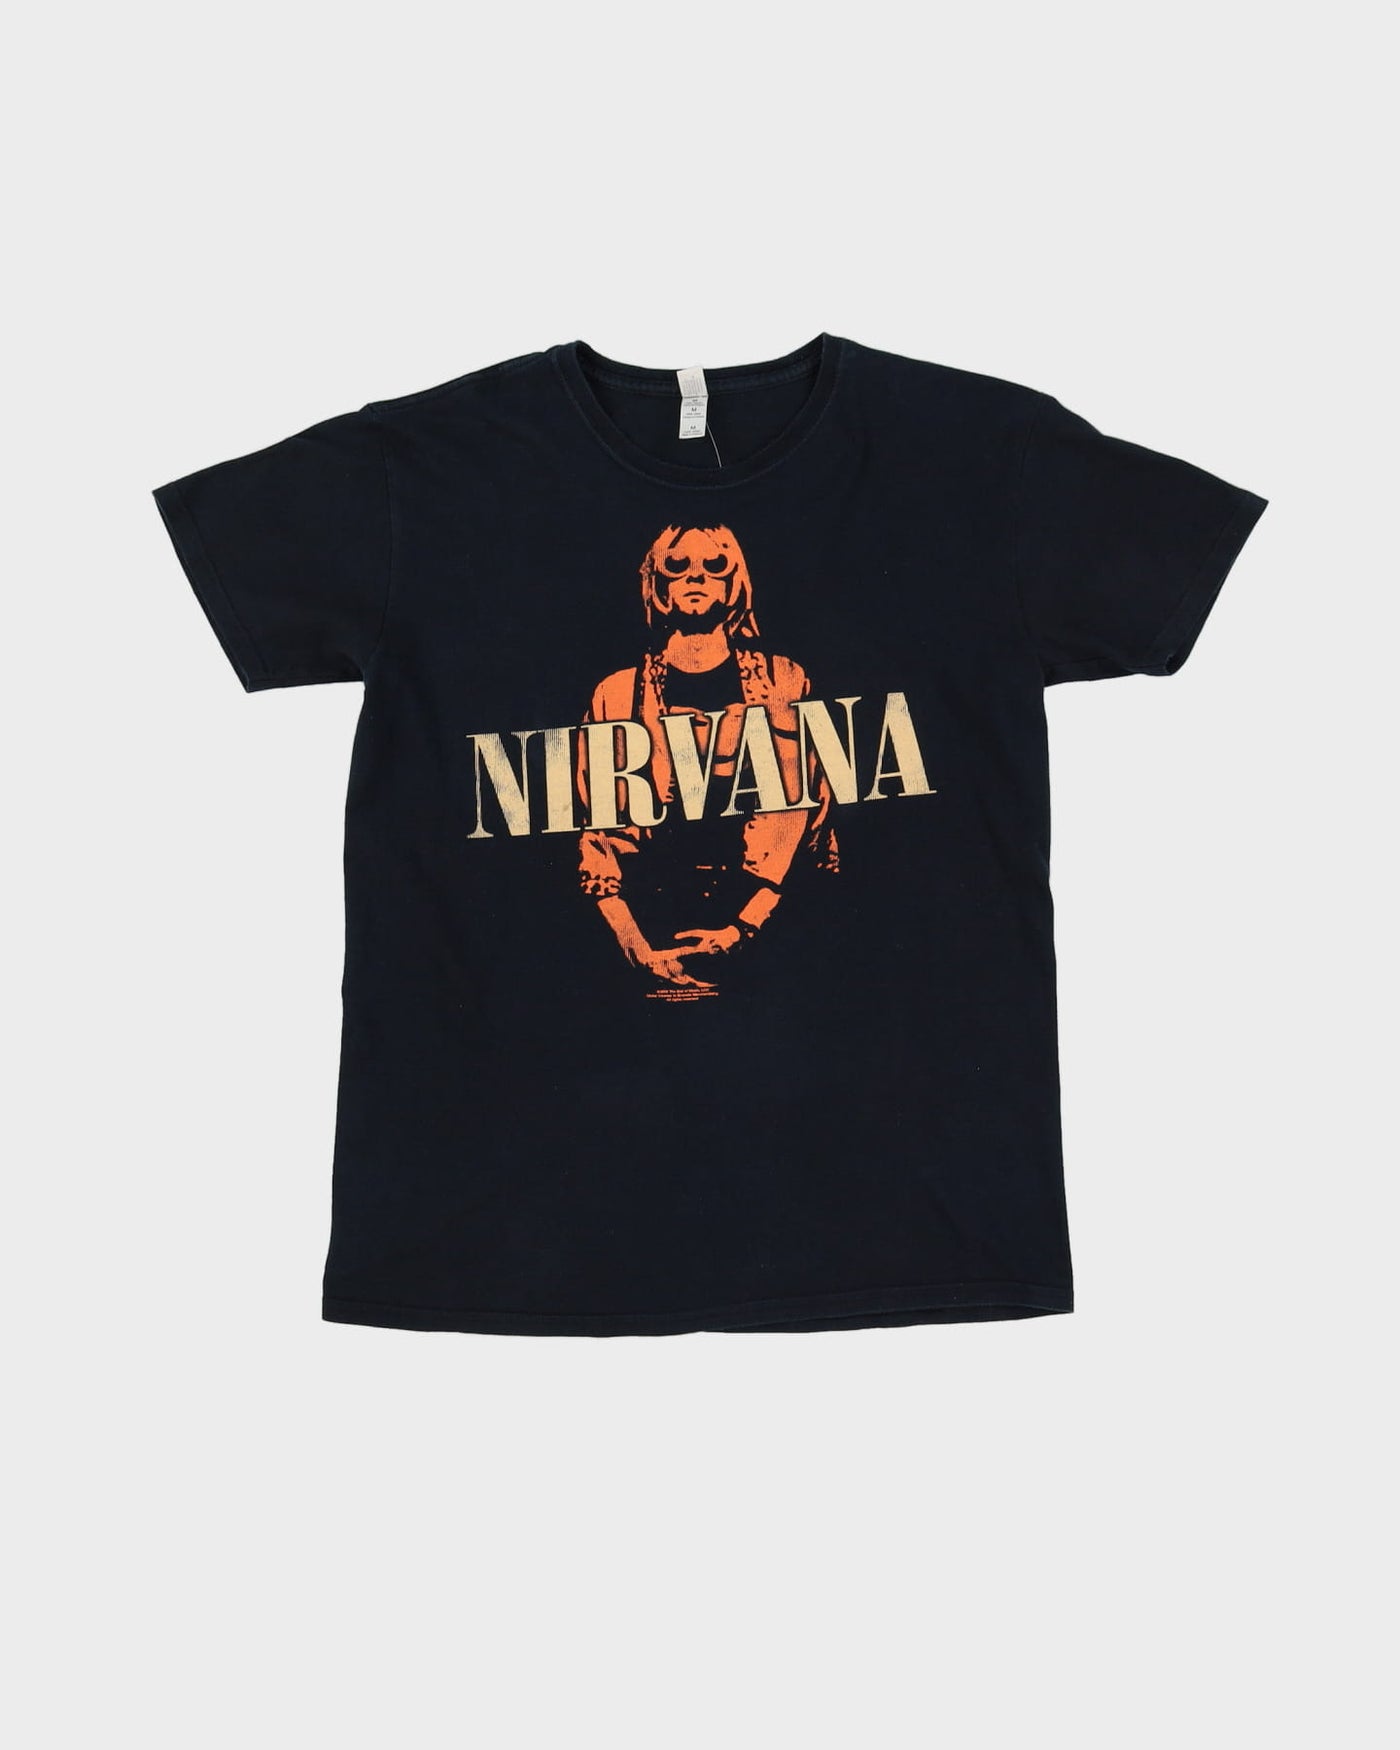 2009 Nirvana Kurt Cobain Black Band T-Shirt - M